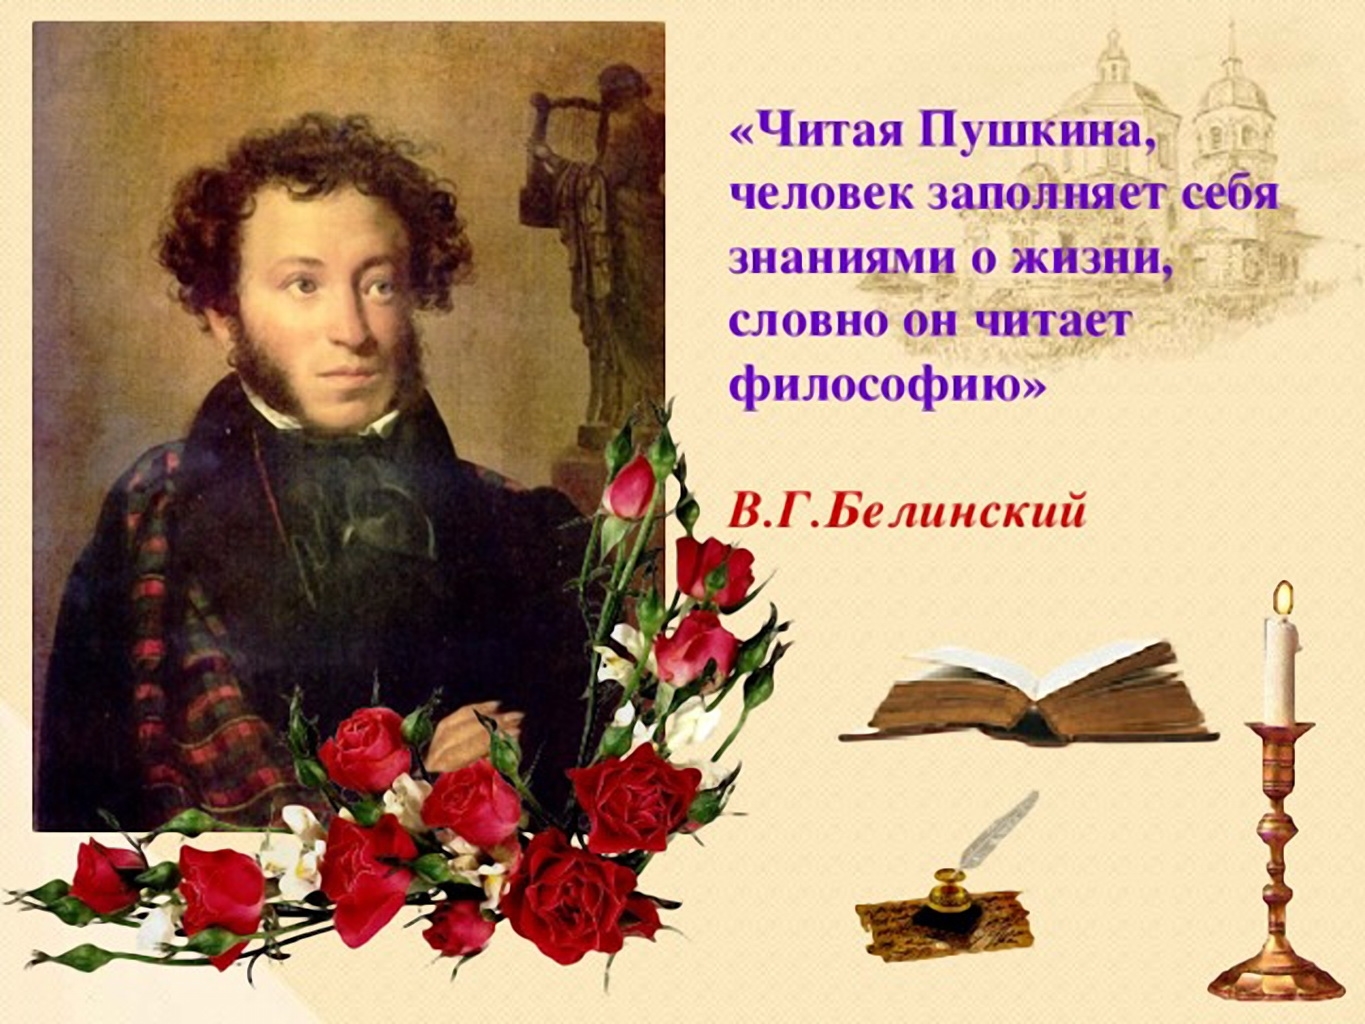 Читая русскую поэзию. 6 Июня день рождения Пушкина.